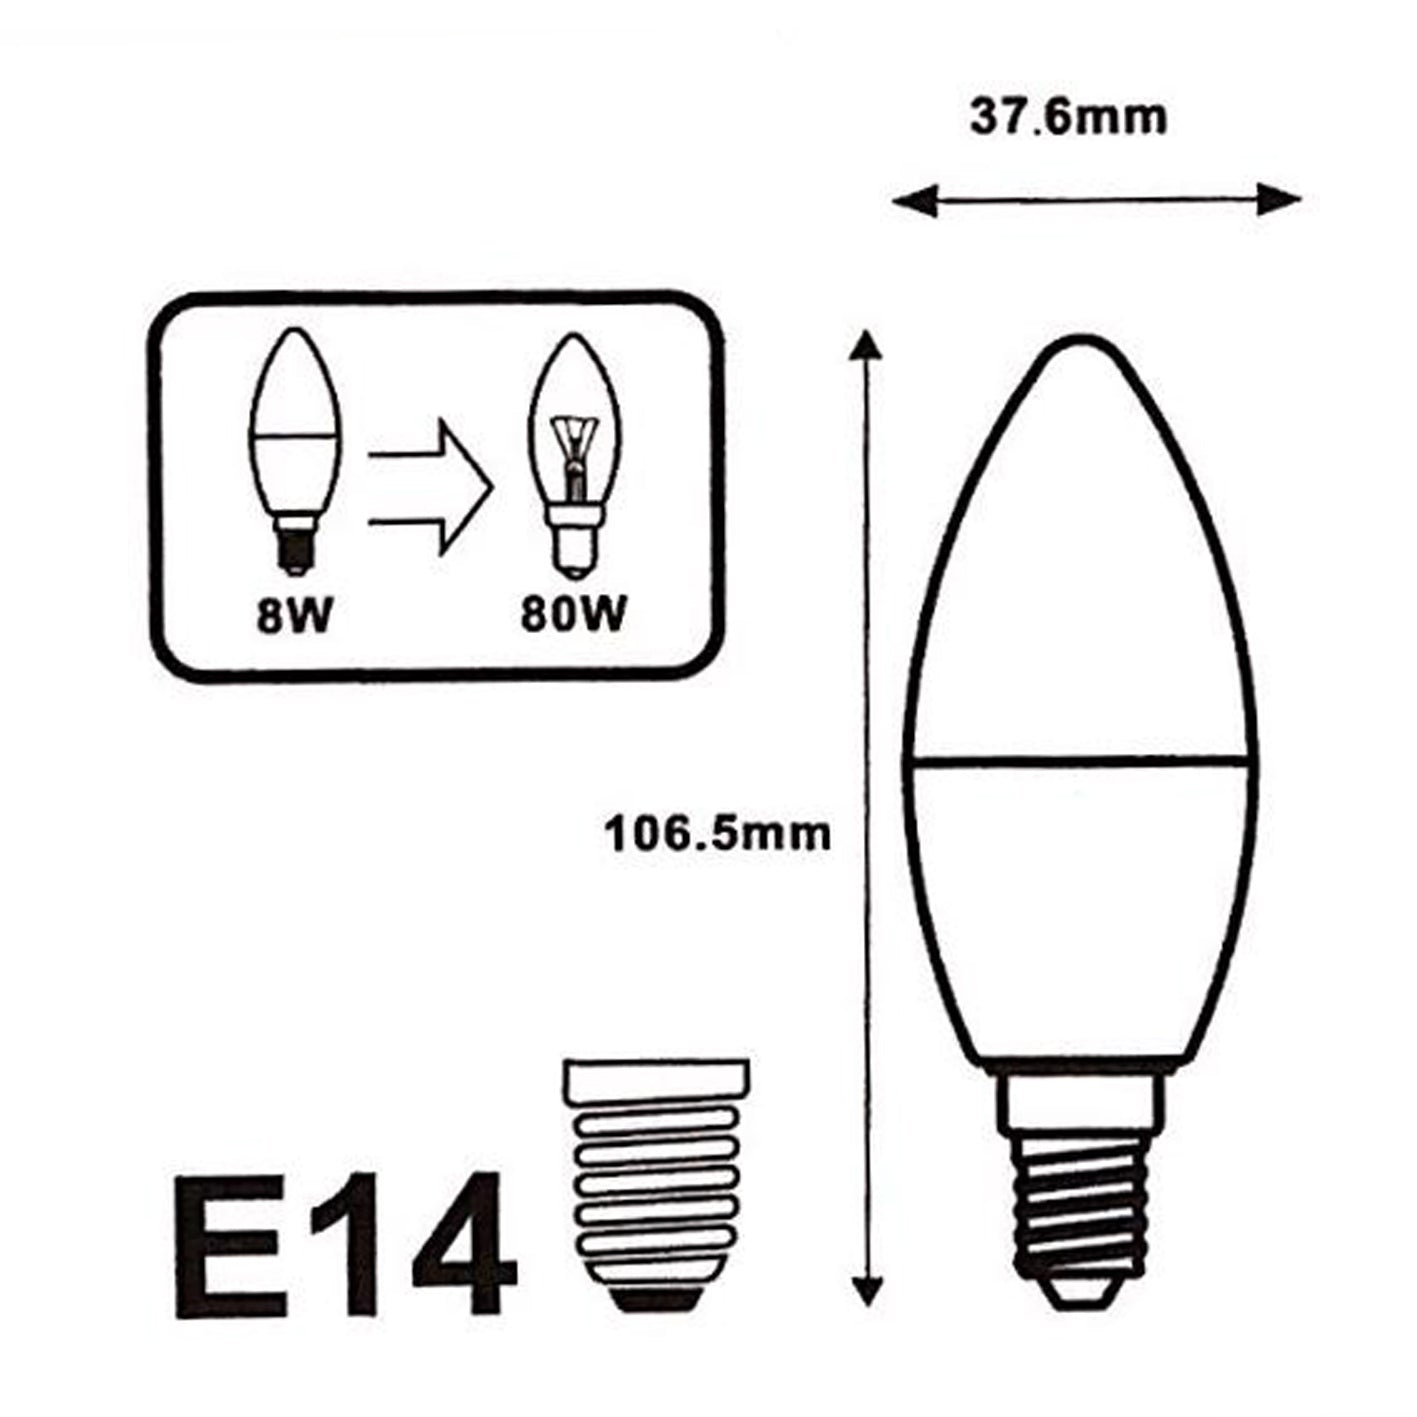 Comment choisir la bonne ampoule E14 ?